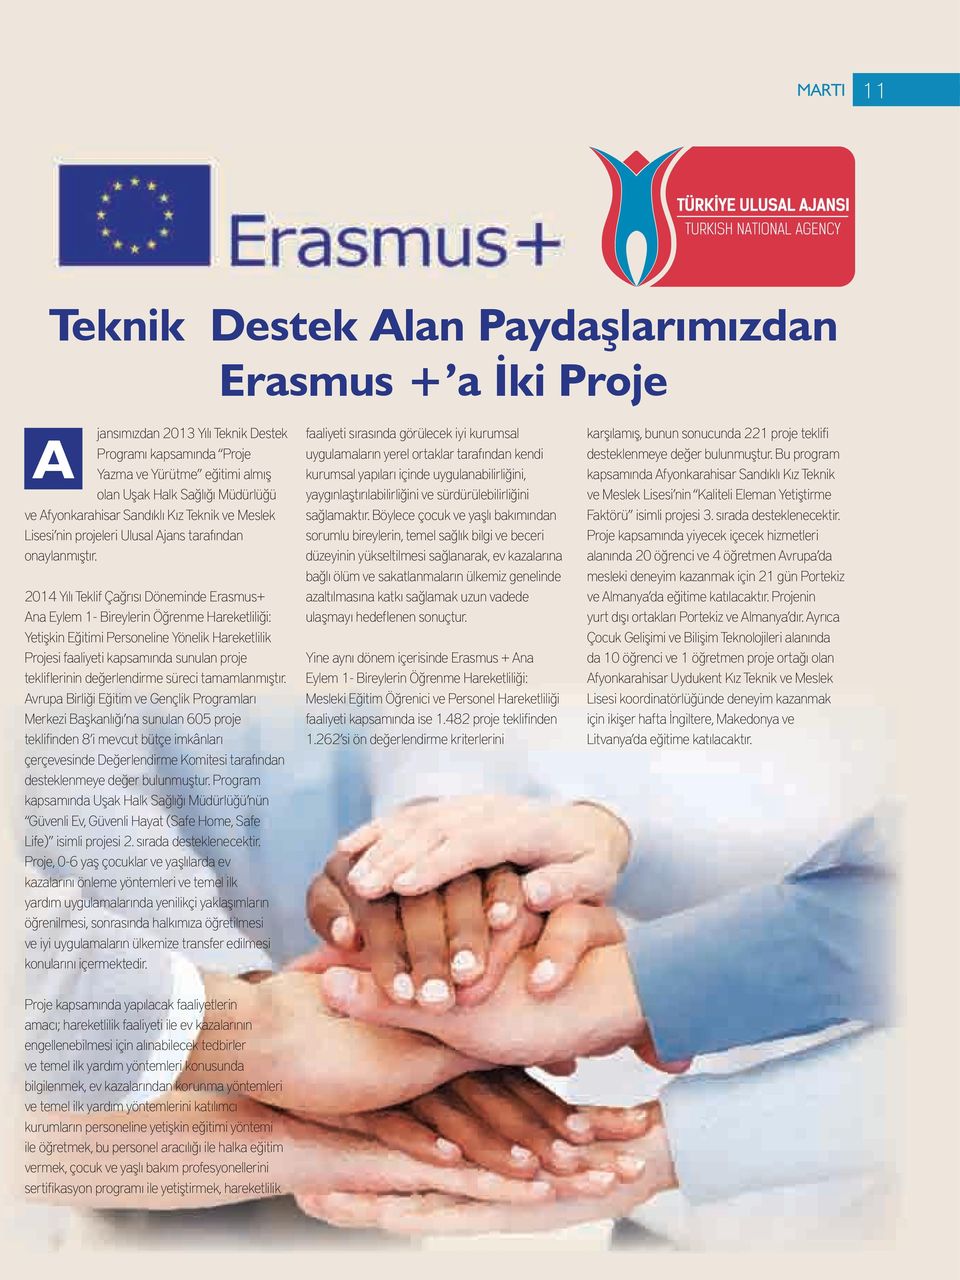 2014 Yılı Teklif Çağrısı Döneminde Erasmus+ Ana Eylem 1- Bireylerin Öğrenme Hareketliliği: Yetişkin Eğitimi Personeline Yönelik Hareketlilik Projesi faaliyeti kapsamında sunulan proje tekliflerinin